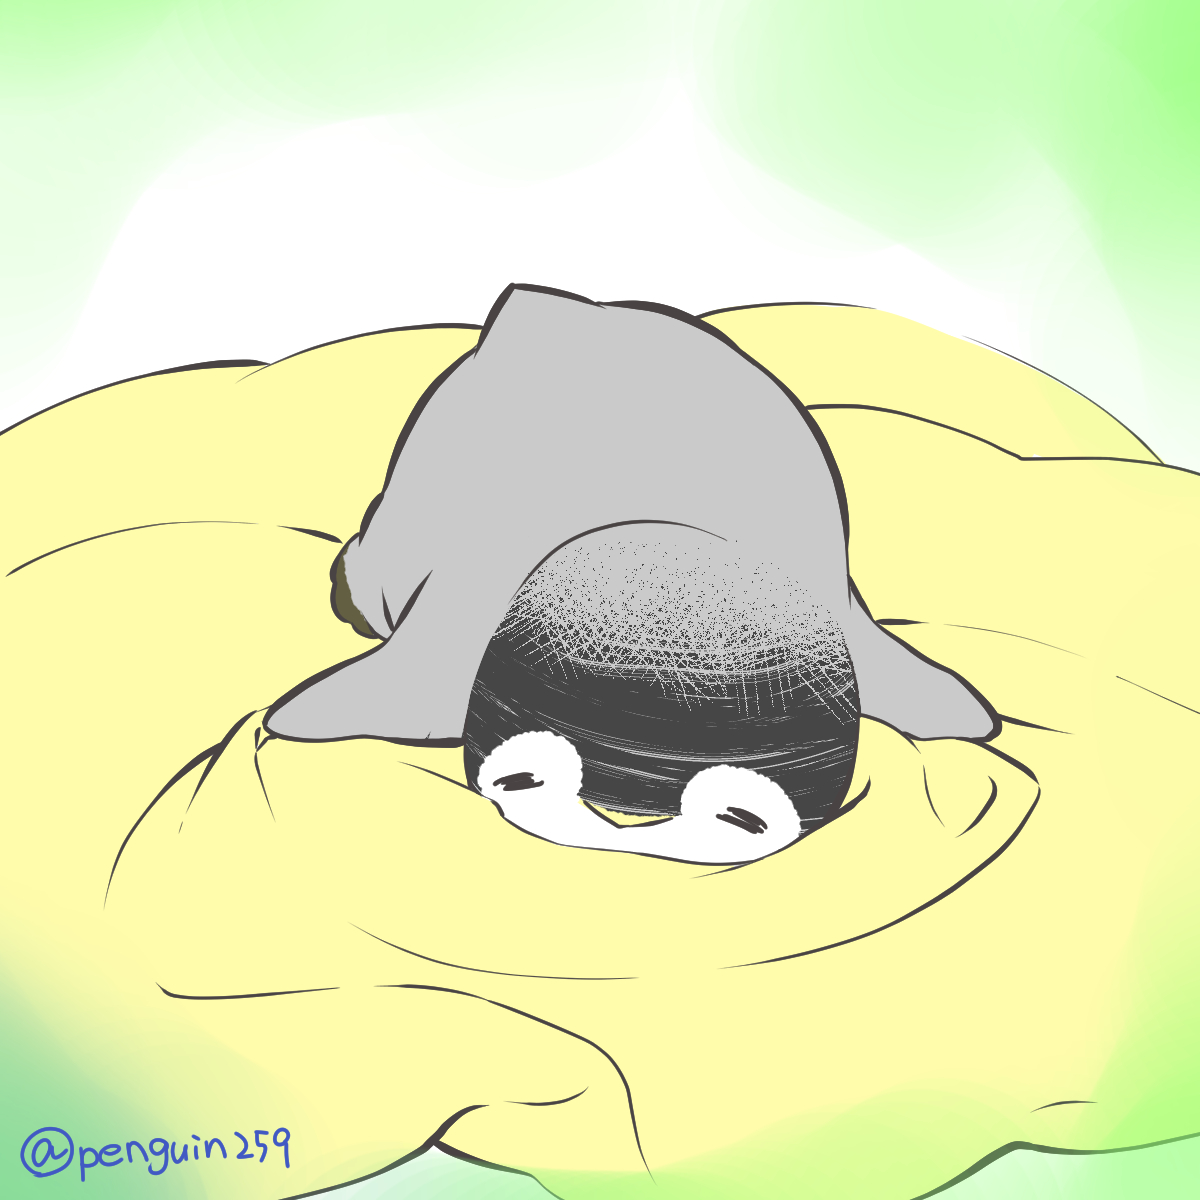 「おやすみなさい 」|皇帝ペンギンのペンペンのイラスト